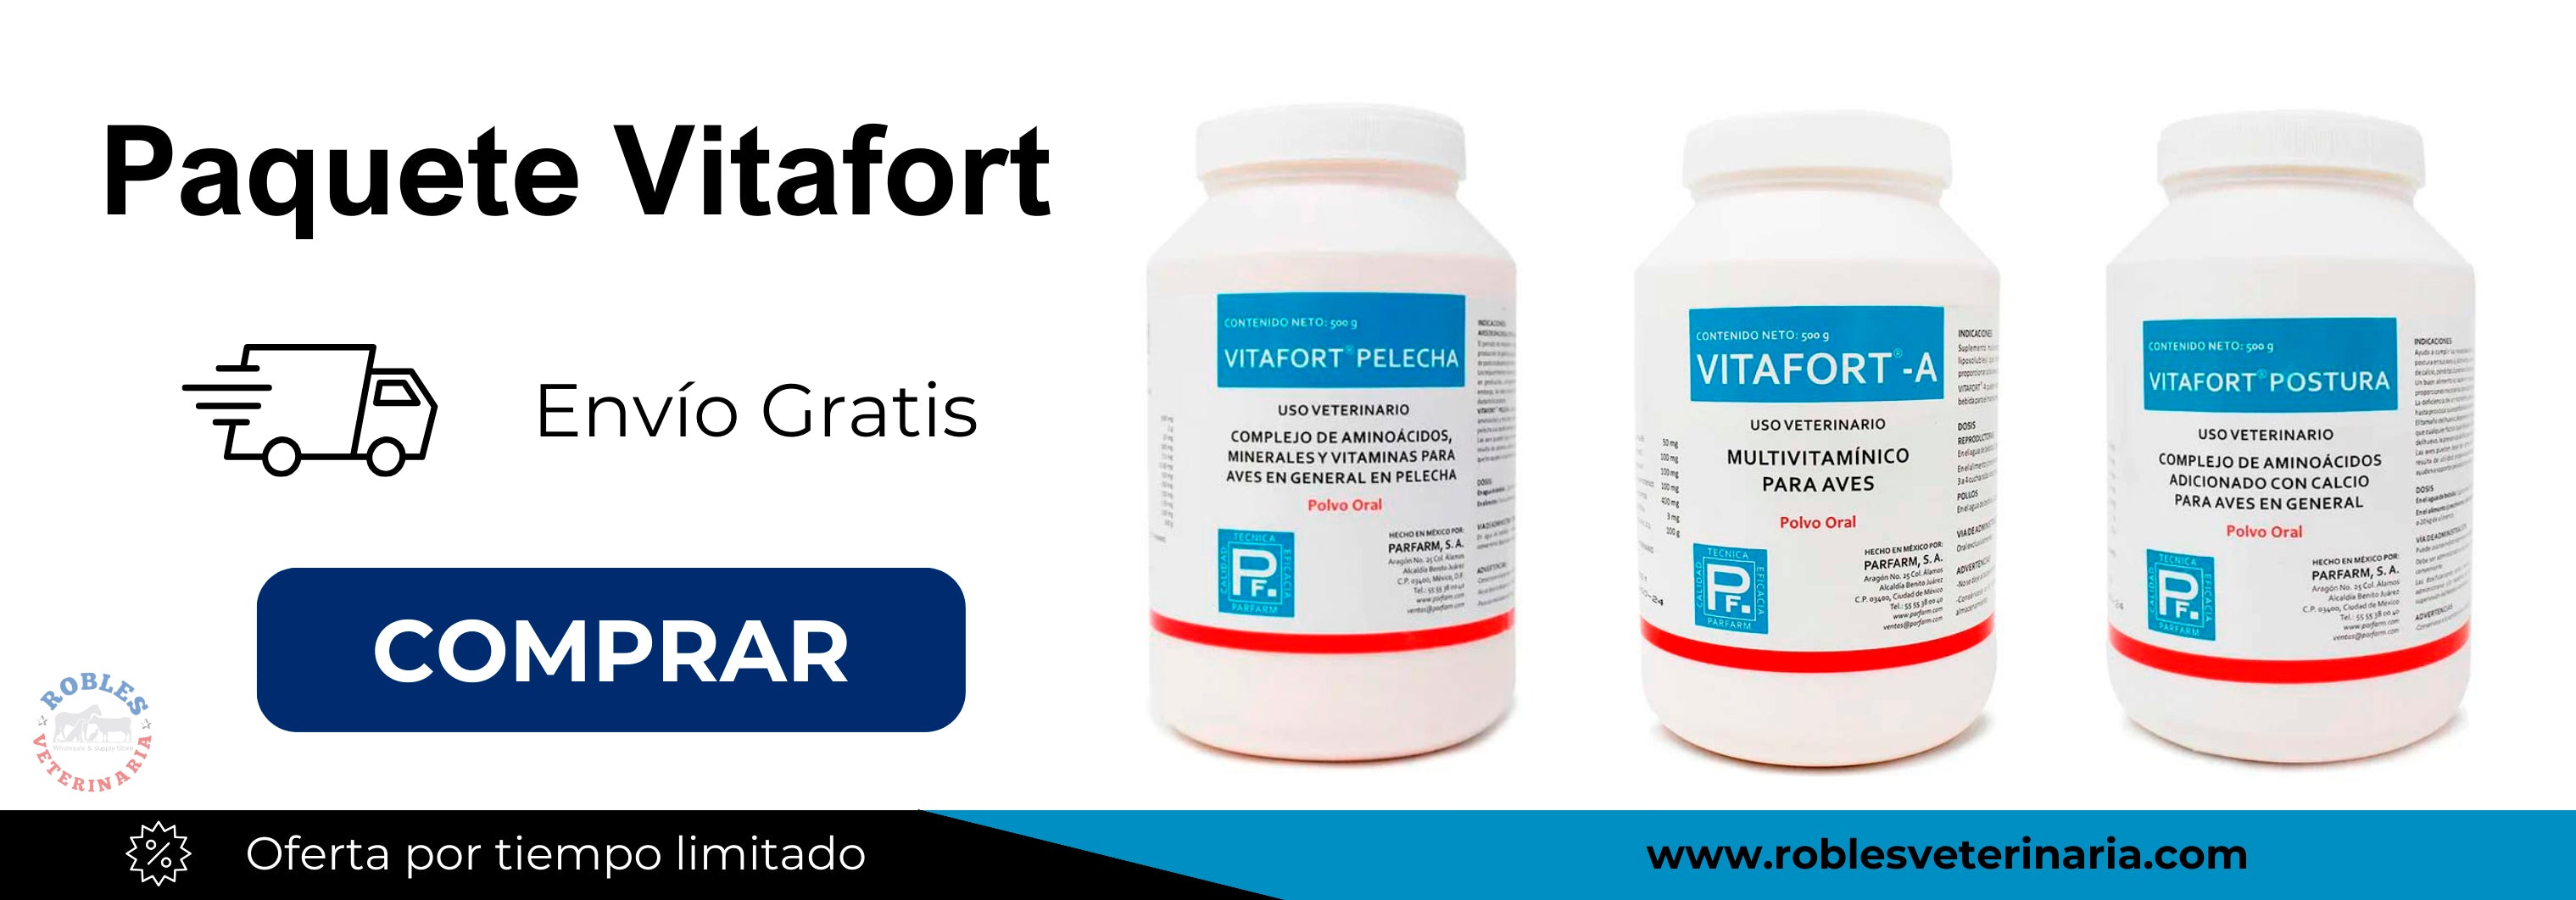 Paquete Vitafort | Robles Veterinaria